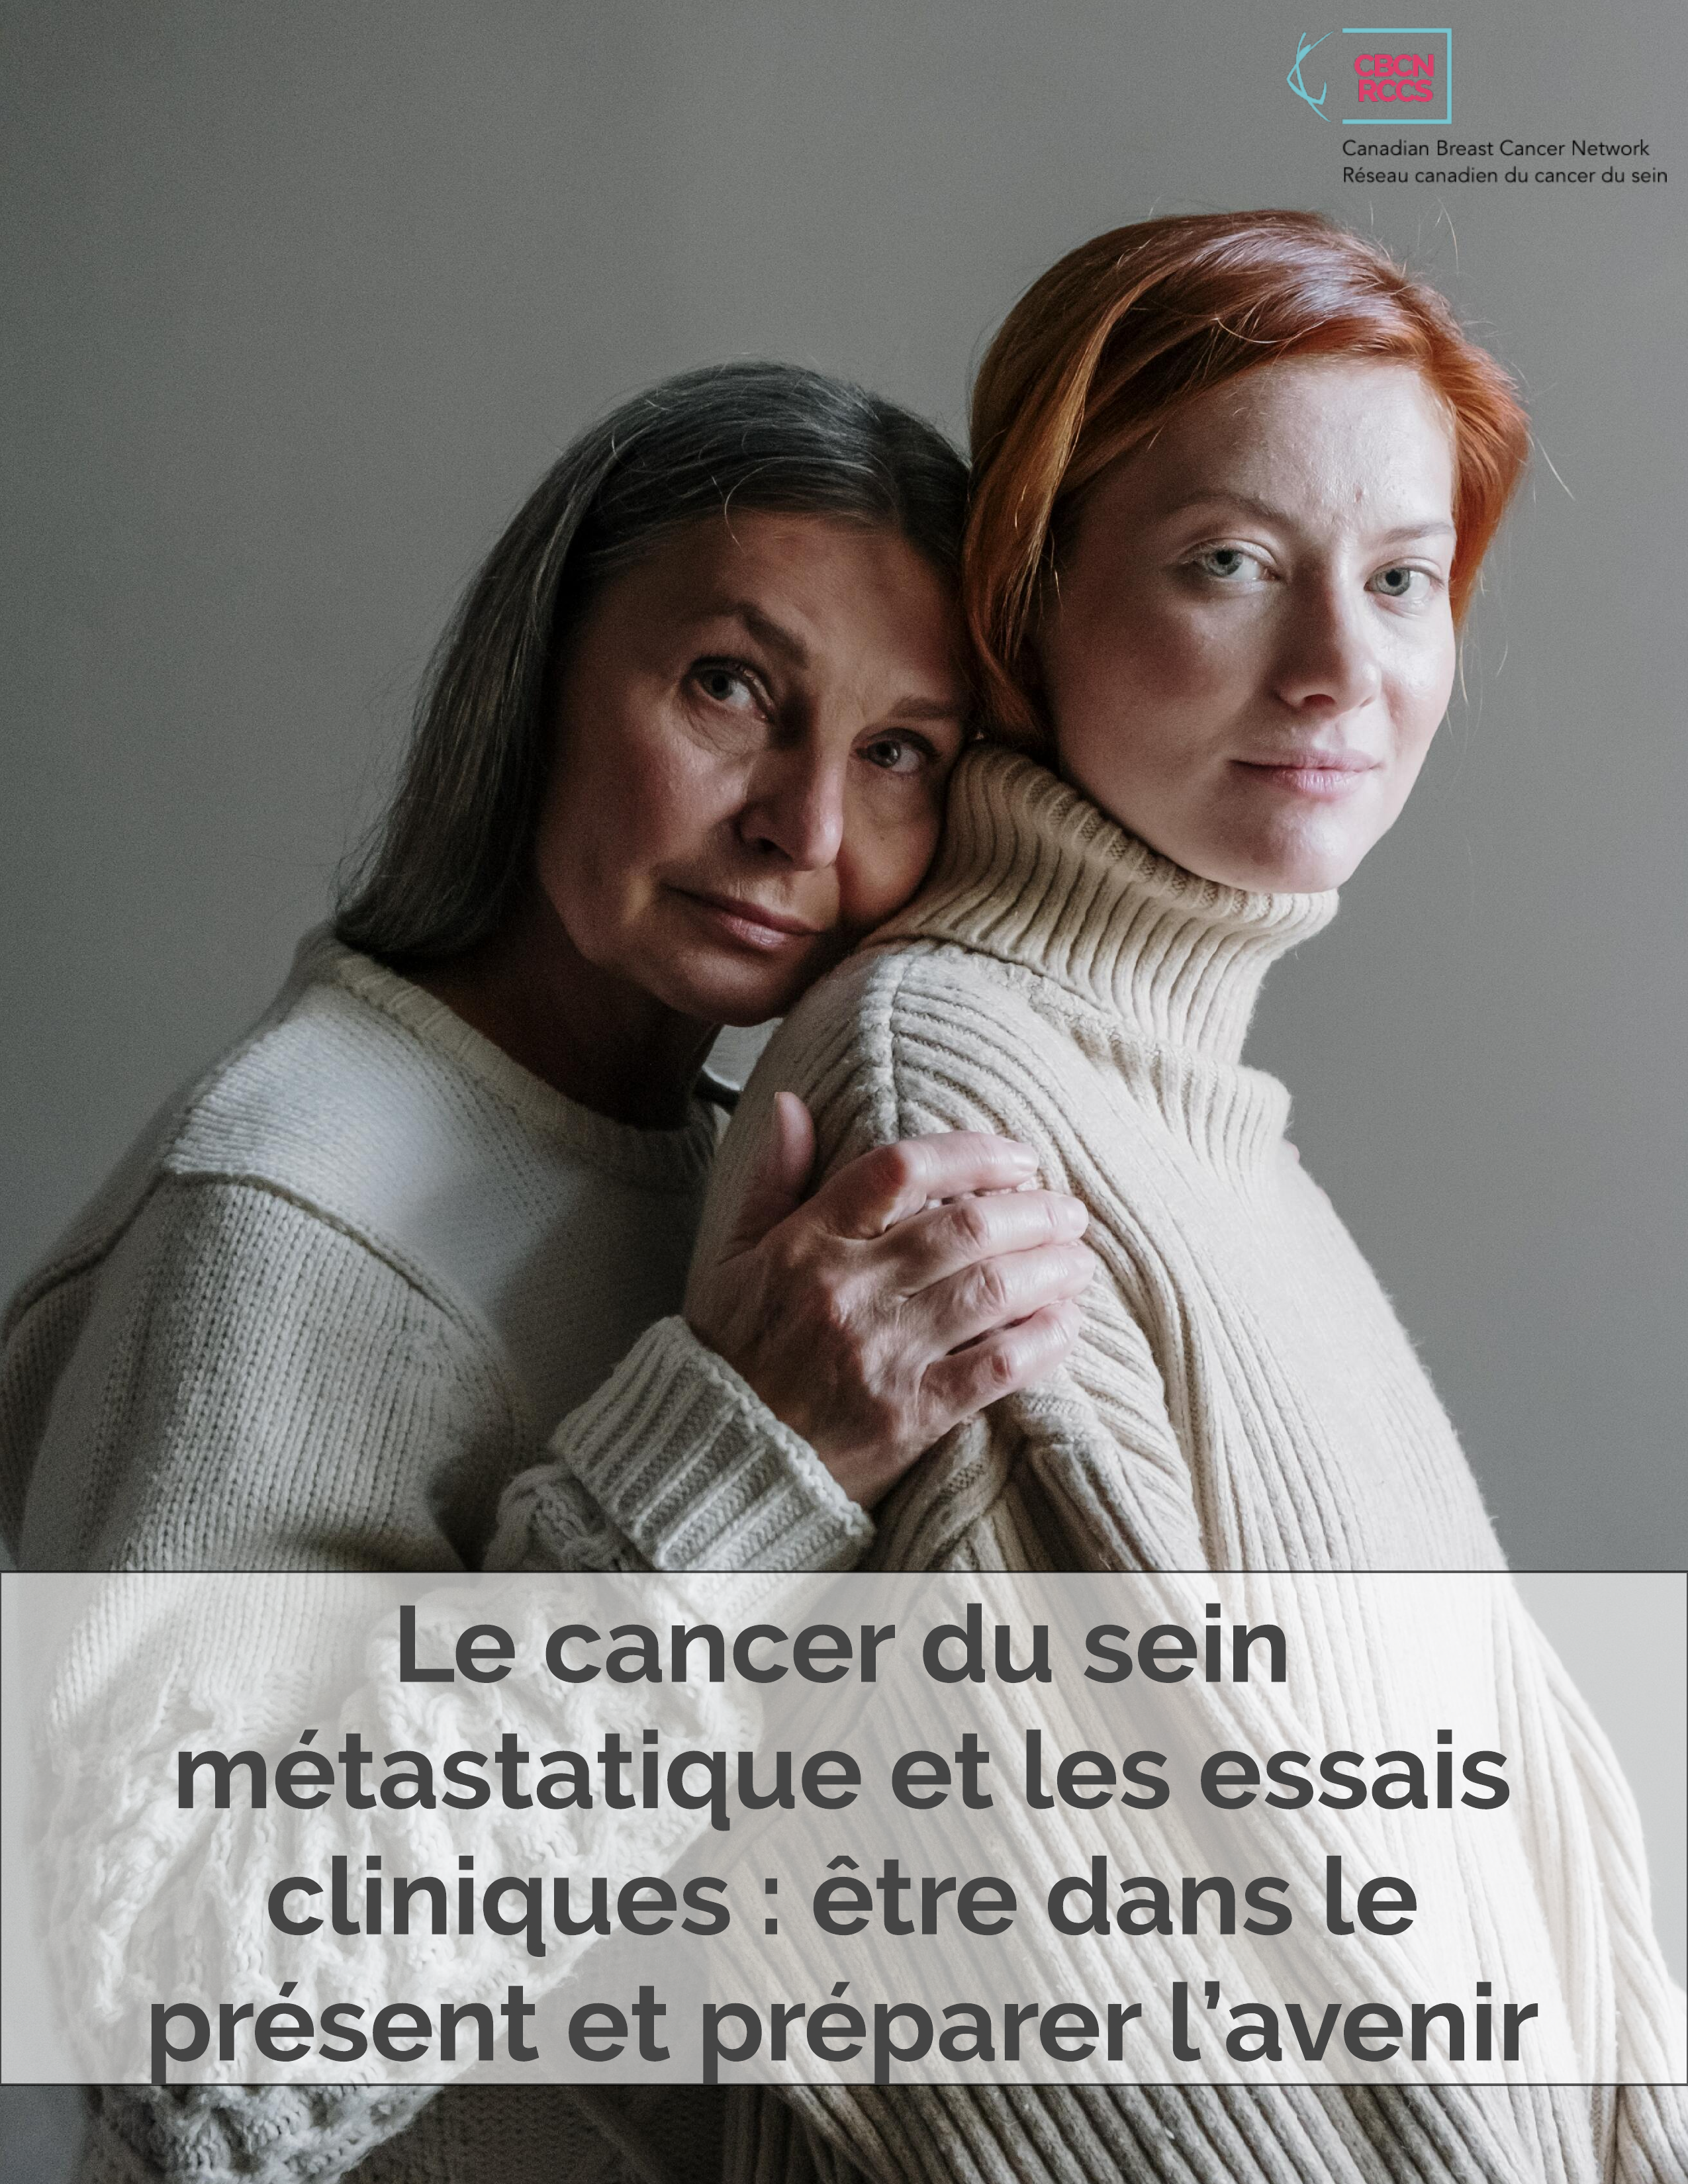 Le cancer du sein métastatique et les essais cliniques : être dans le présent et préparer l’avenir